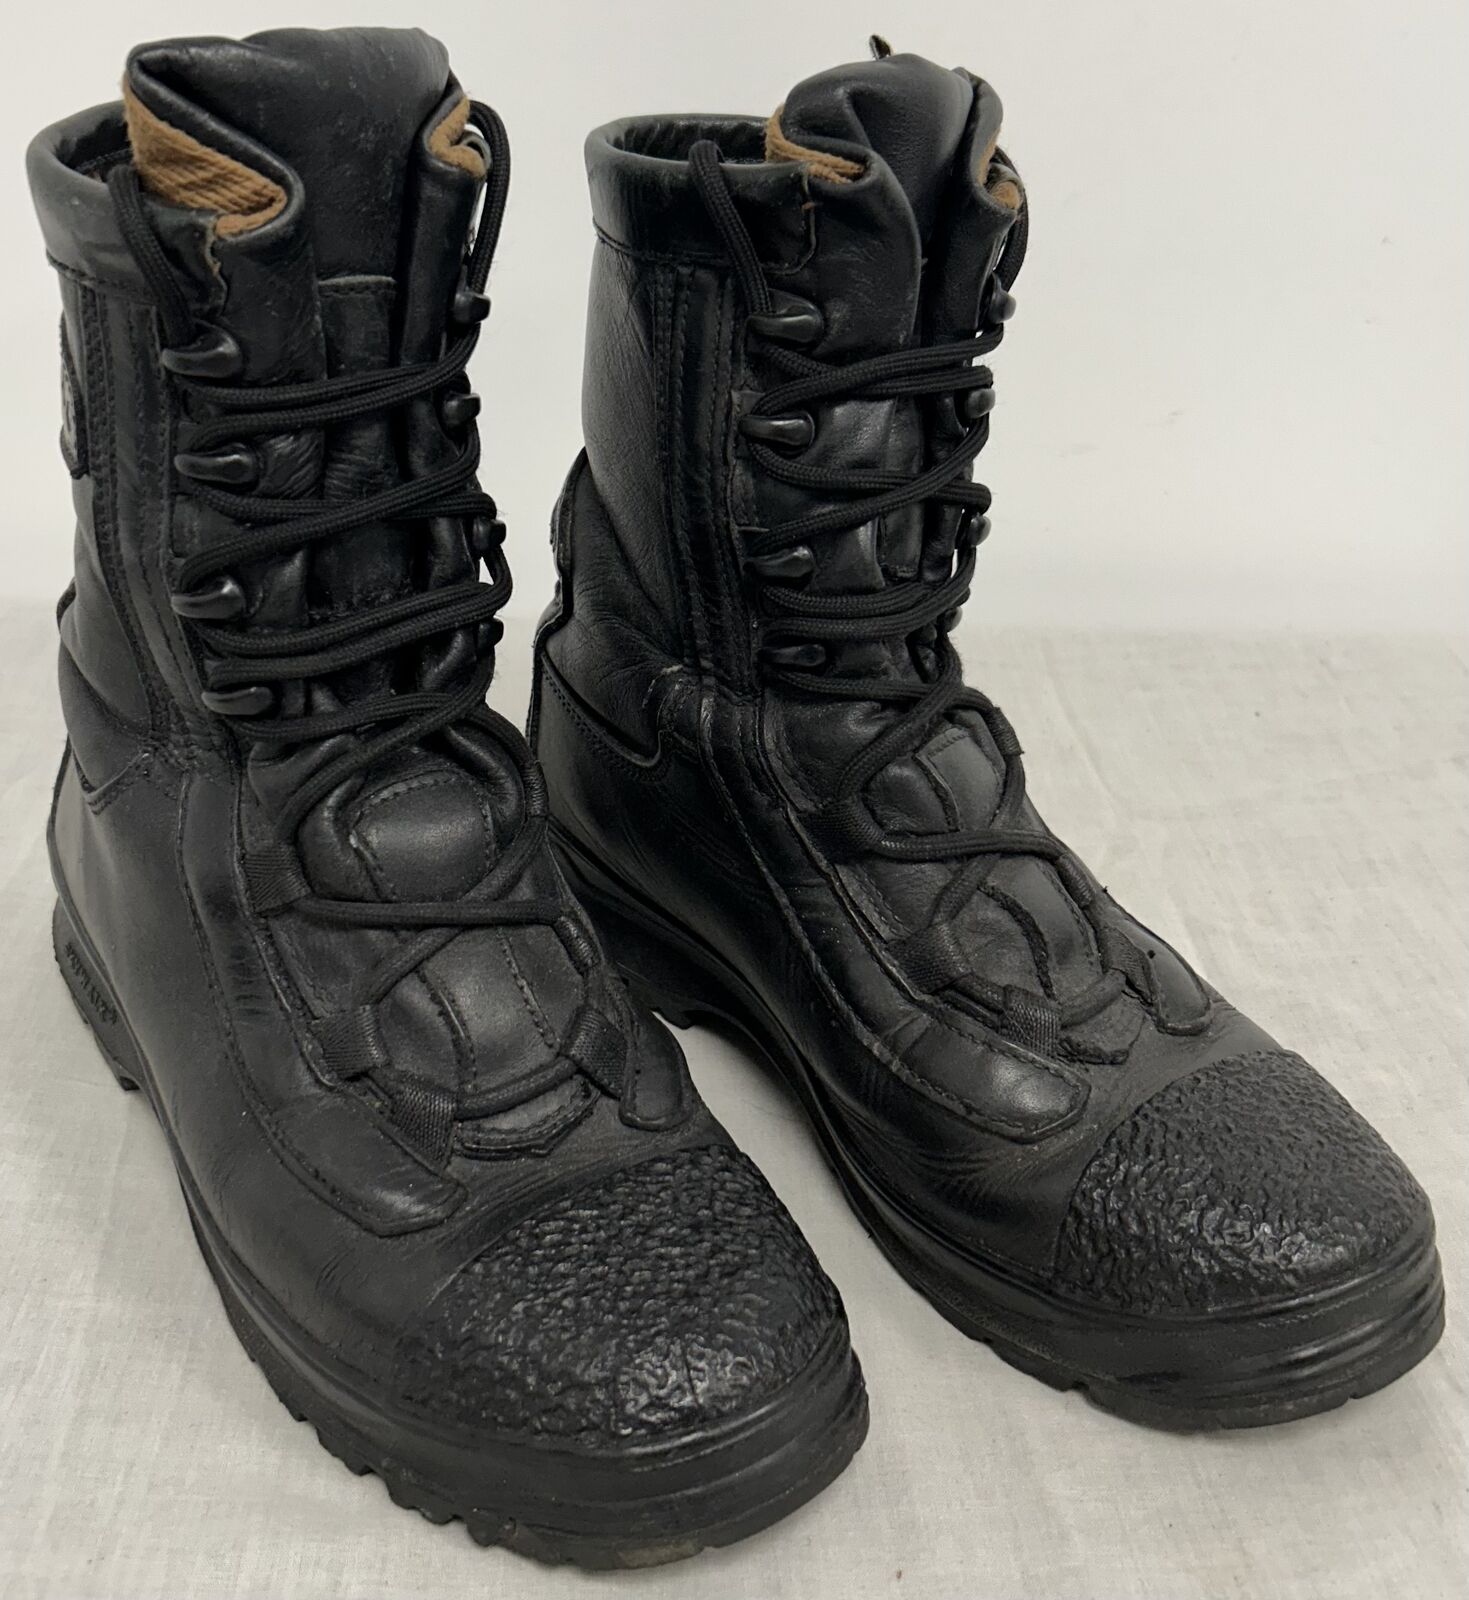 British Military Issue Black Alt-Berg Specialist Design EOD Combat Patrol Boots